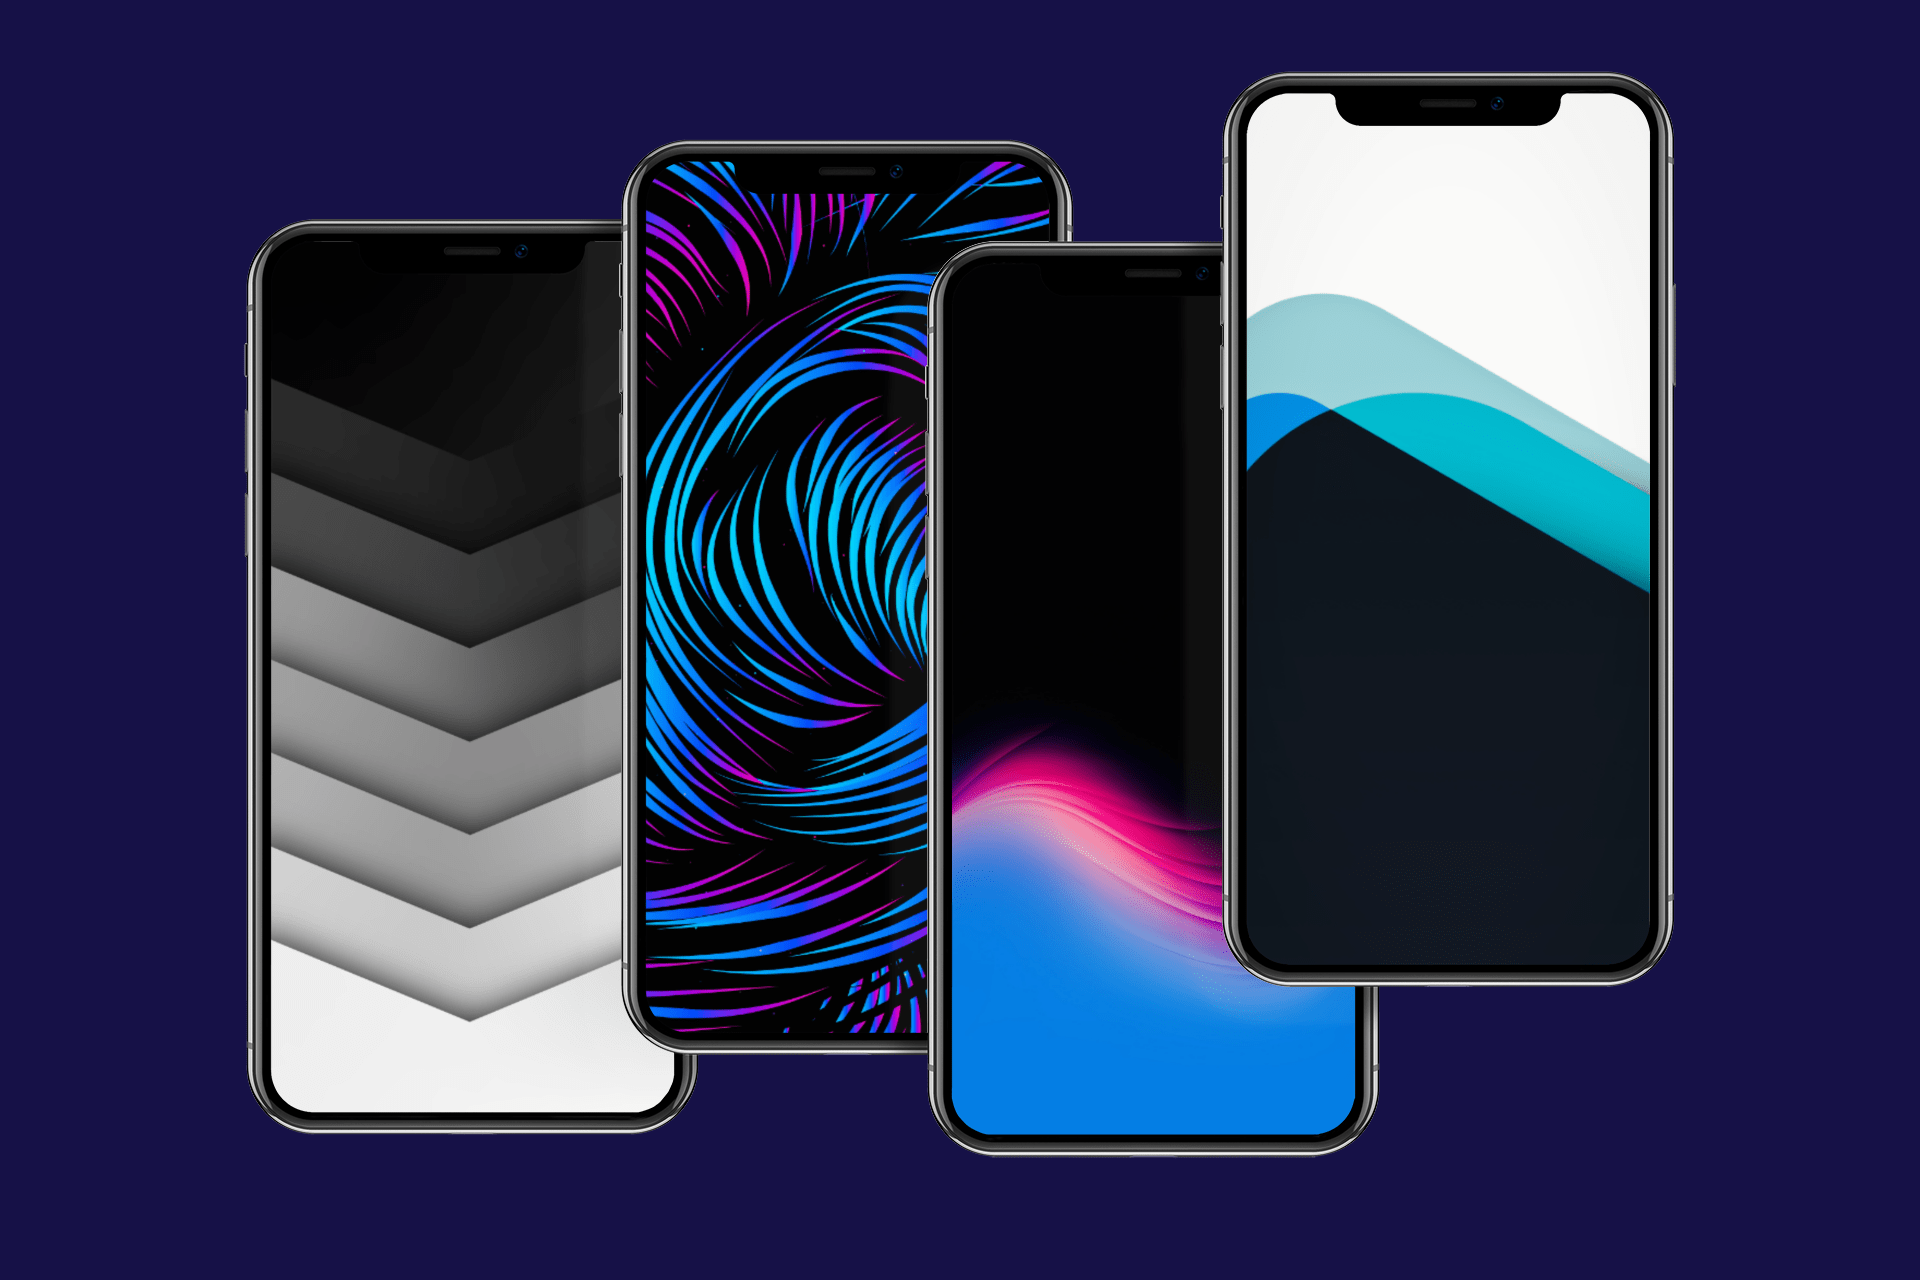 Top Iphone Wallpapers 2019 - HD Wallpaper 